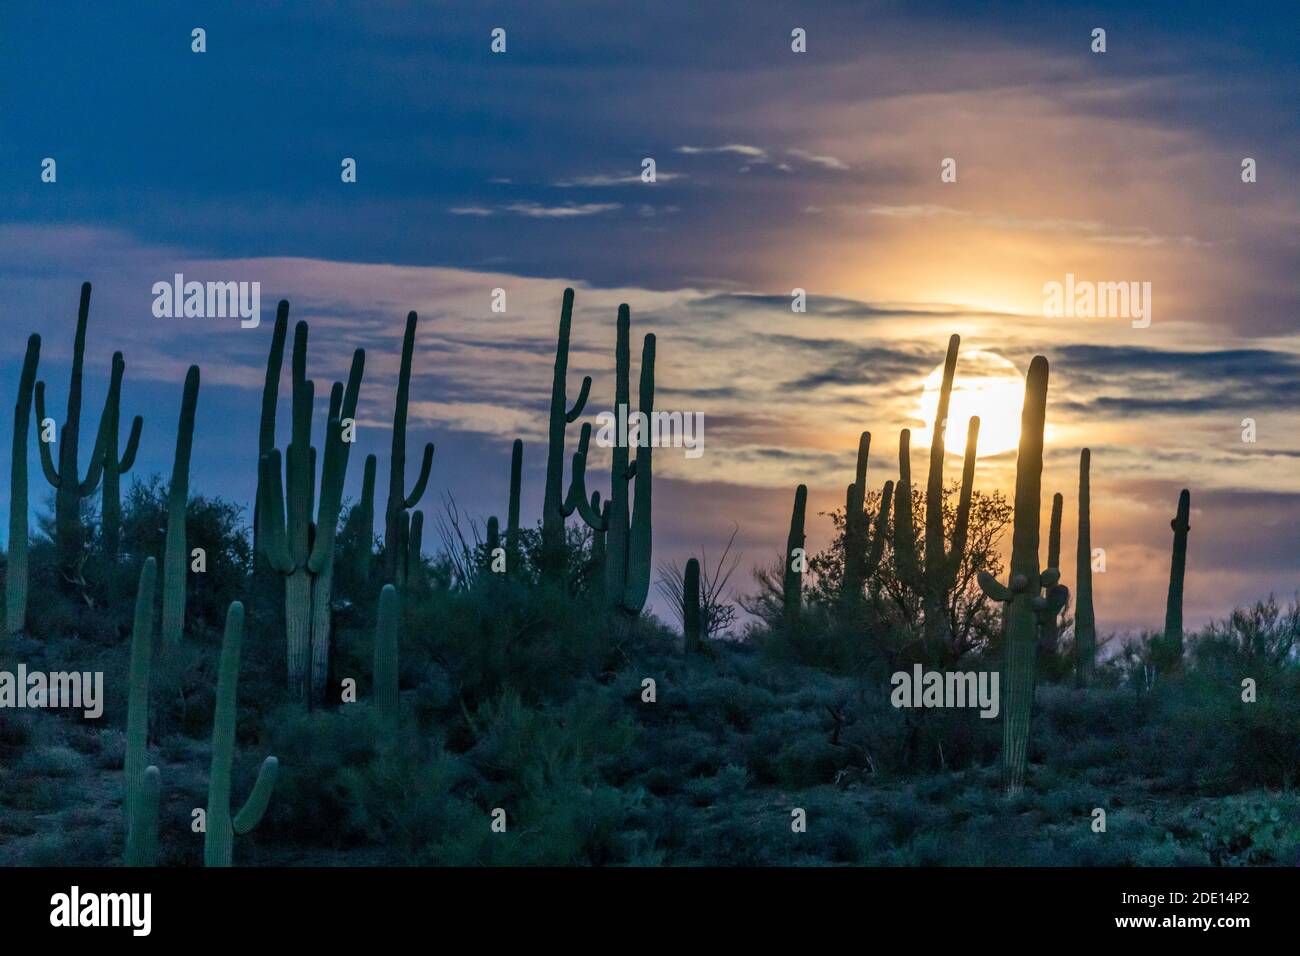 La super pleine lune qui s'élève au-dessus de saguaro cactus (Carnegiea gigantea), réserve Sweetwater, Tucson, Arizona, États-Unis d'Amérique, Amérique du Nord Banque D'Images